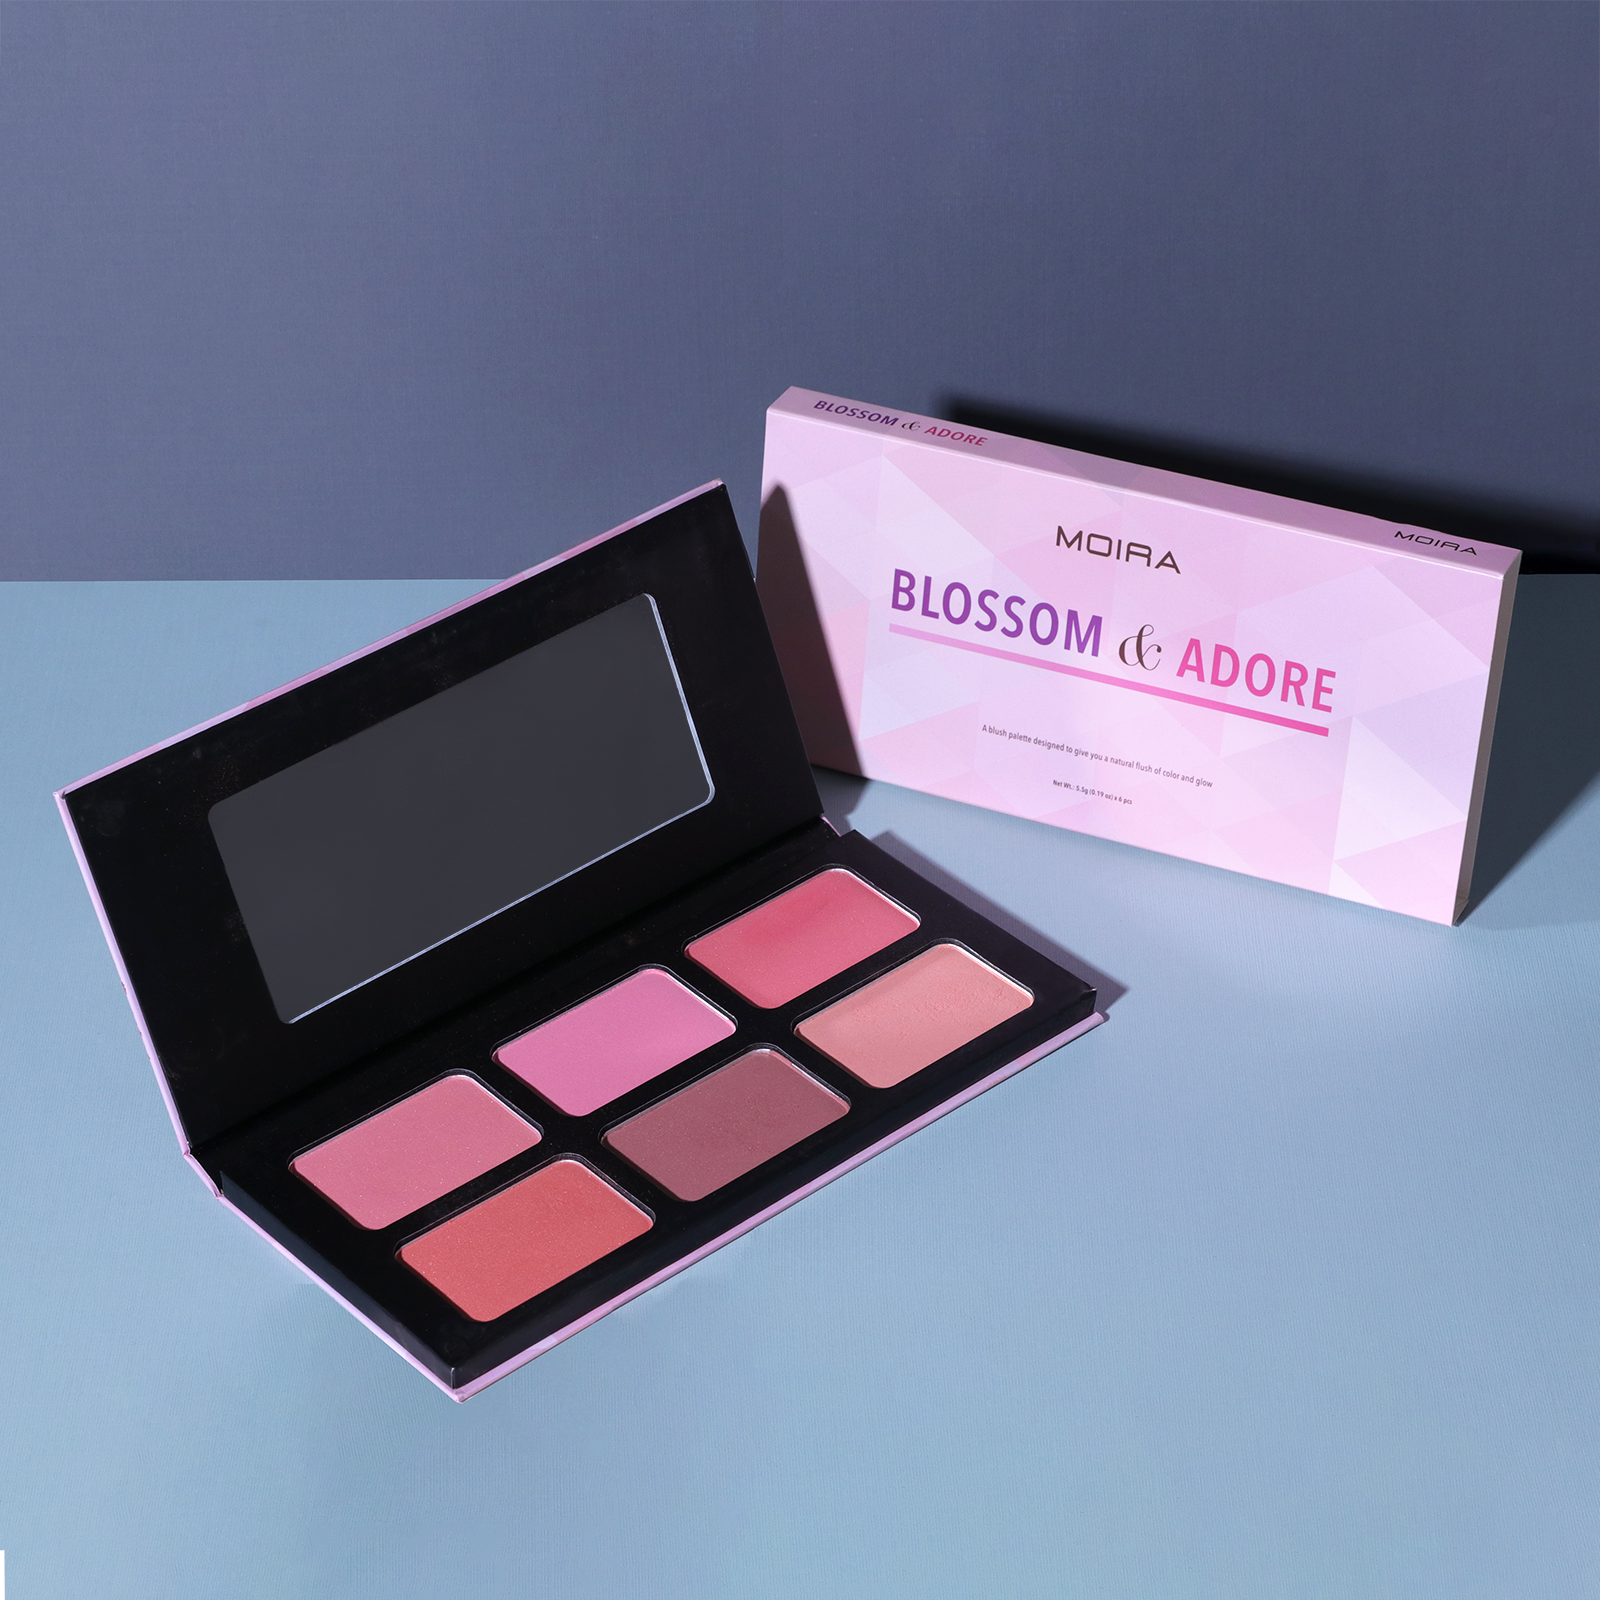 Moira Beauty - Blossom & Adore Blush Palette